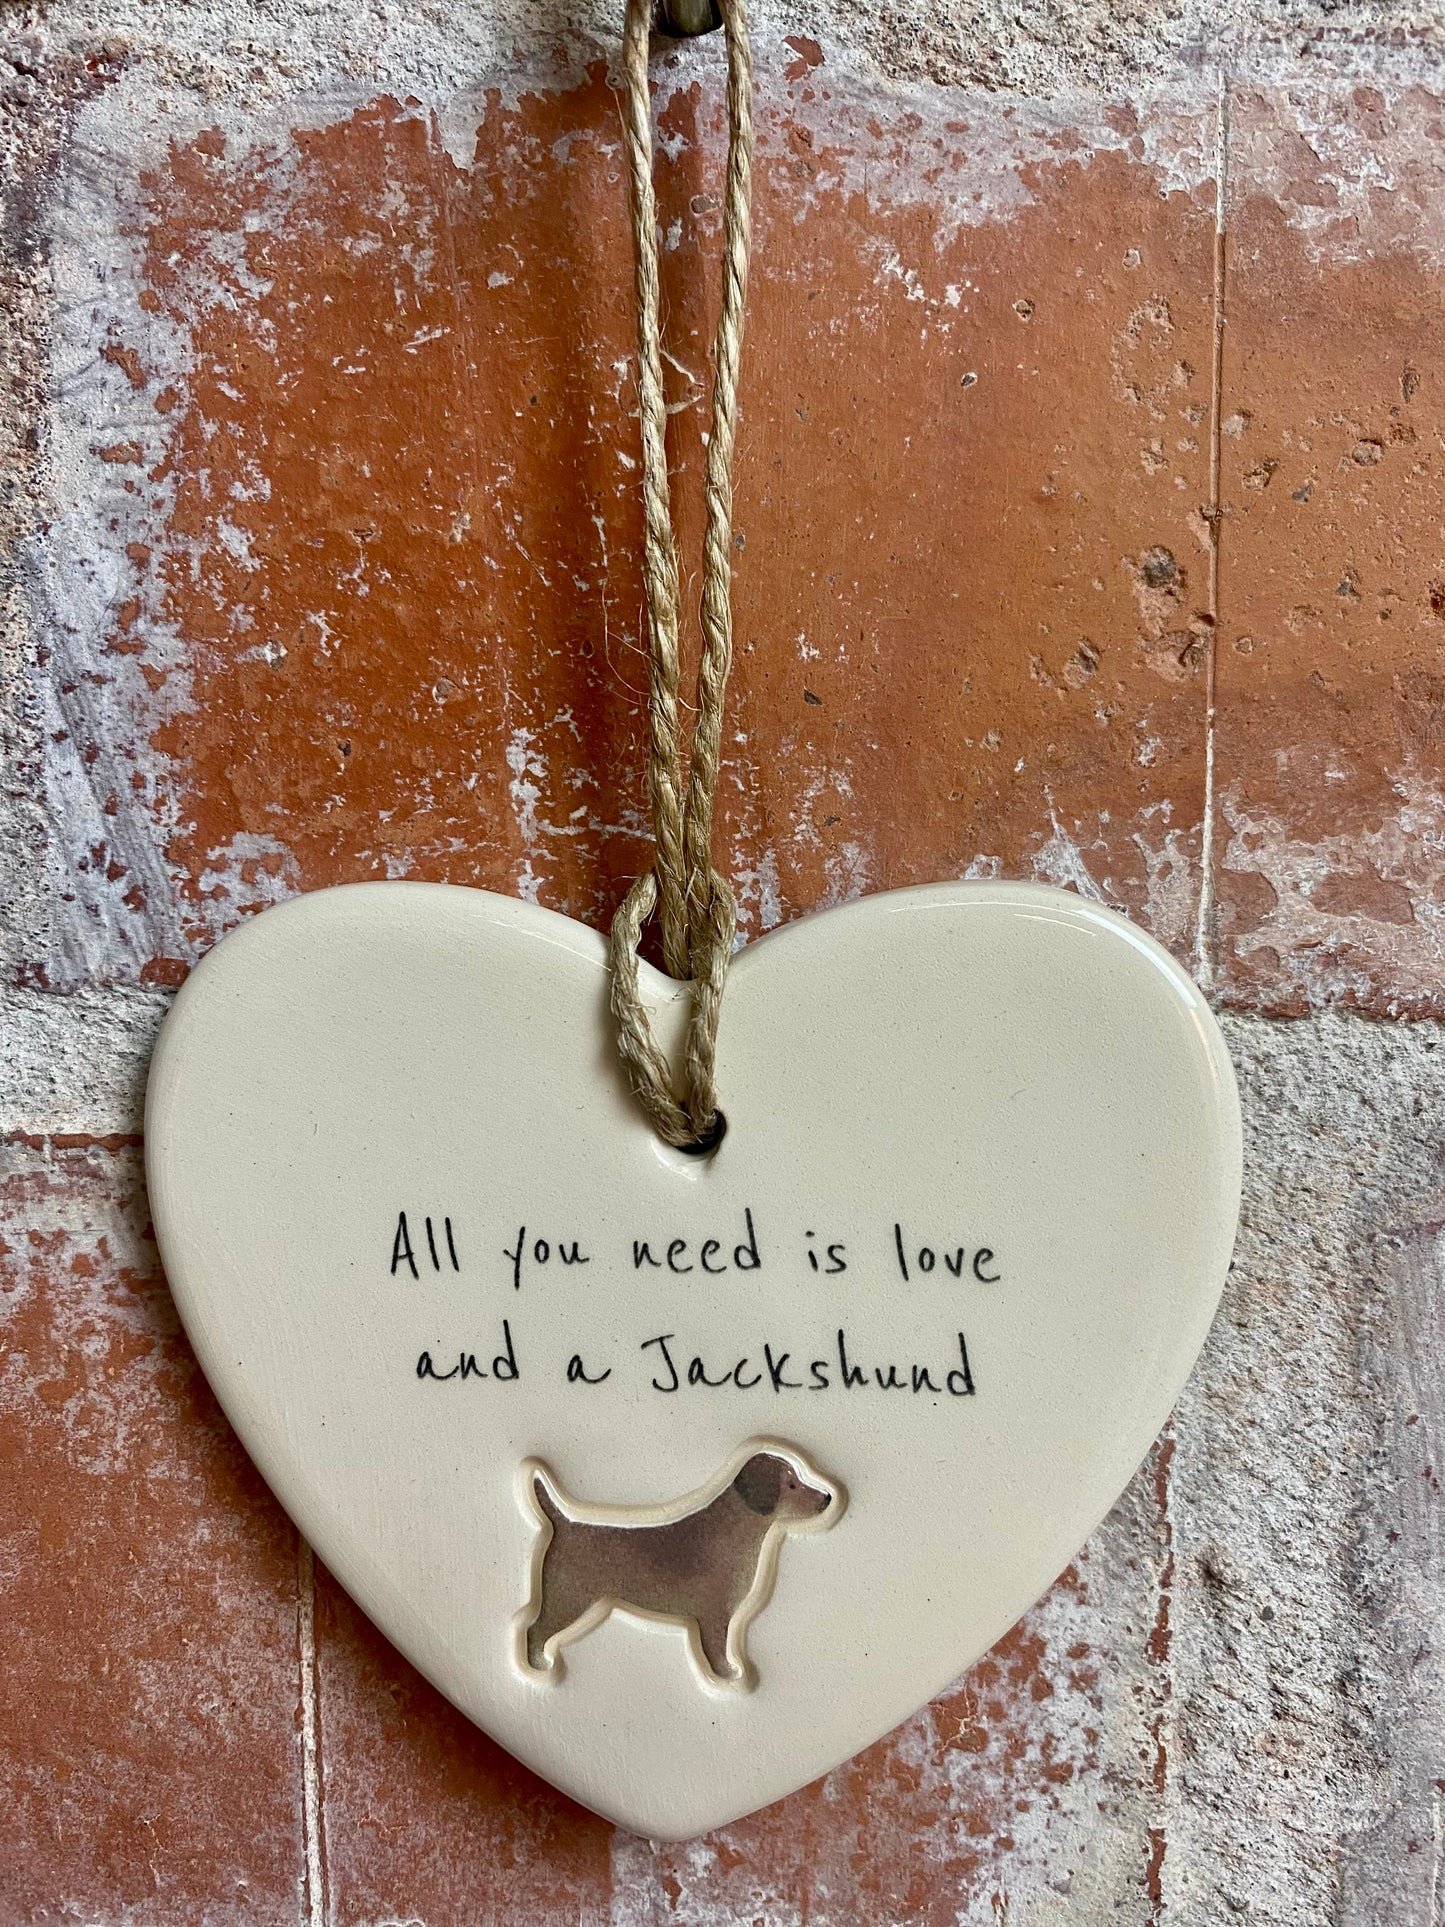 Jackshund ceramic heart